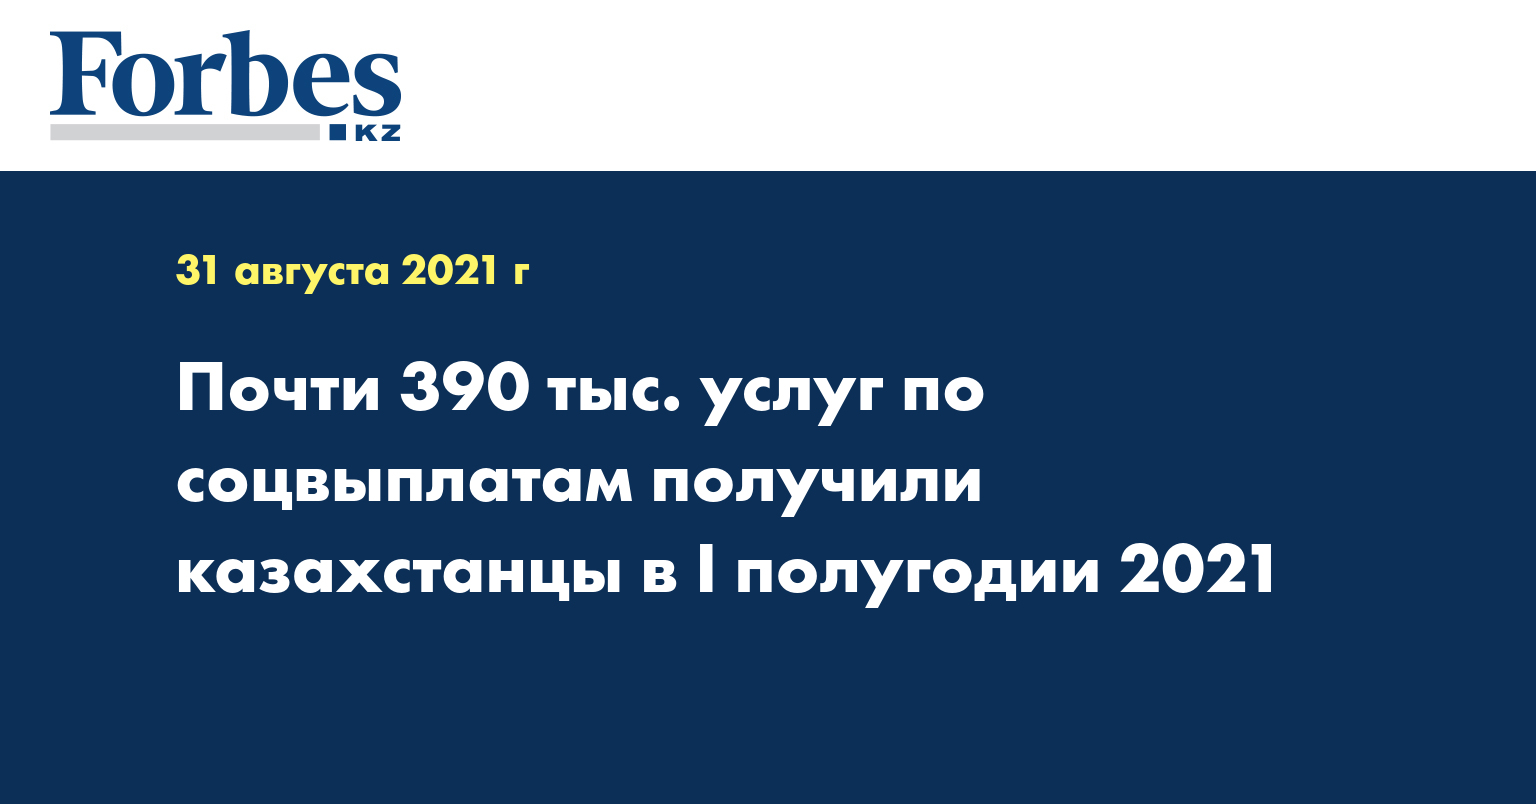 Почти 390 тыс. услуг по соцвыплатам получили казахстанцы в I полугодии 2021